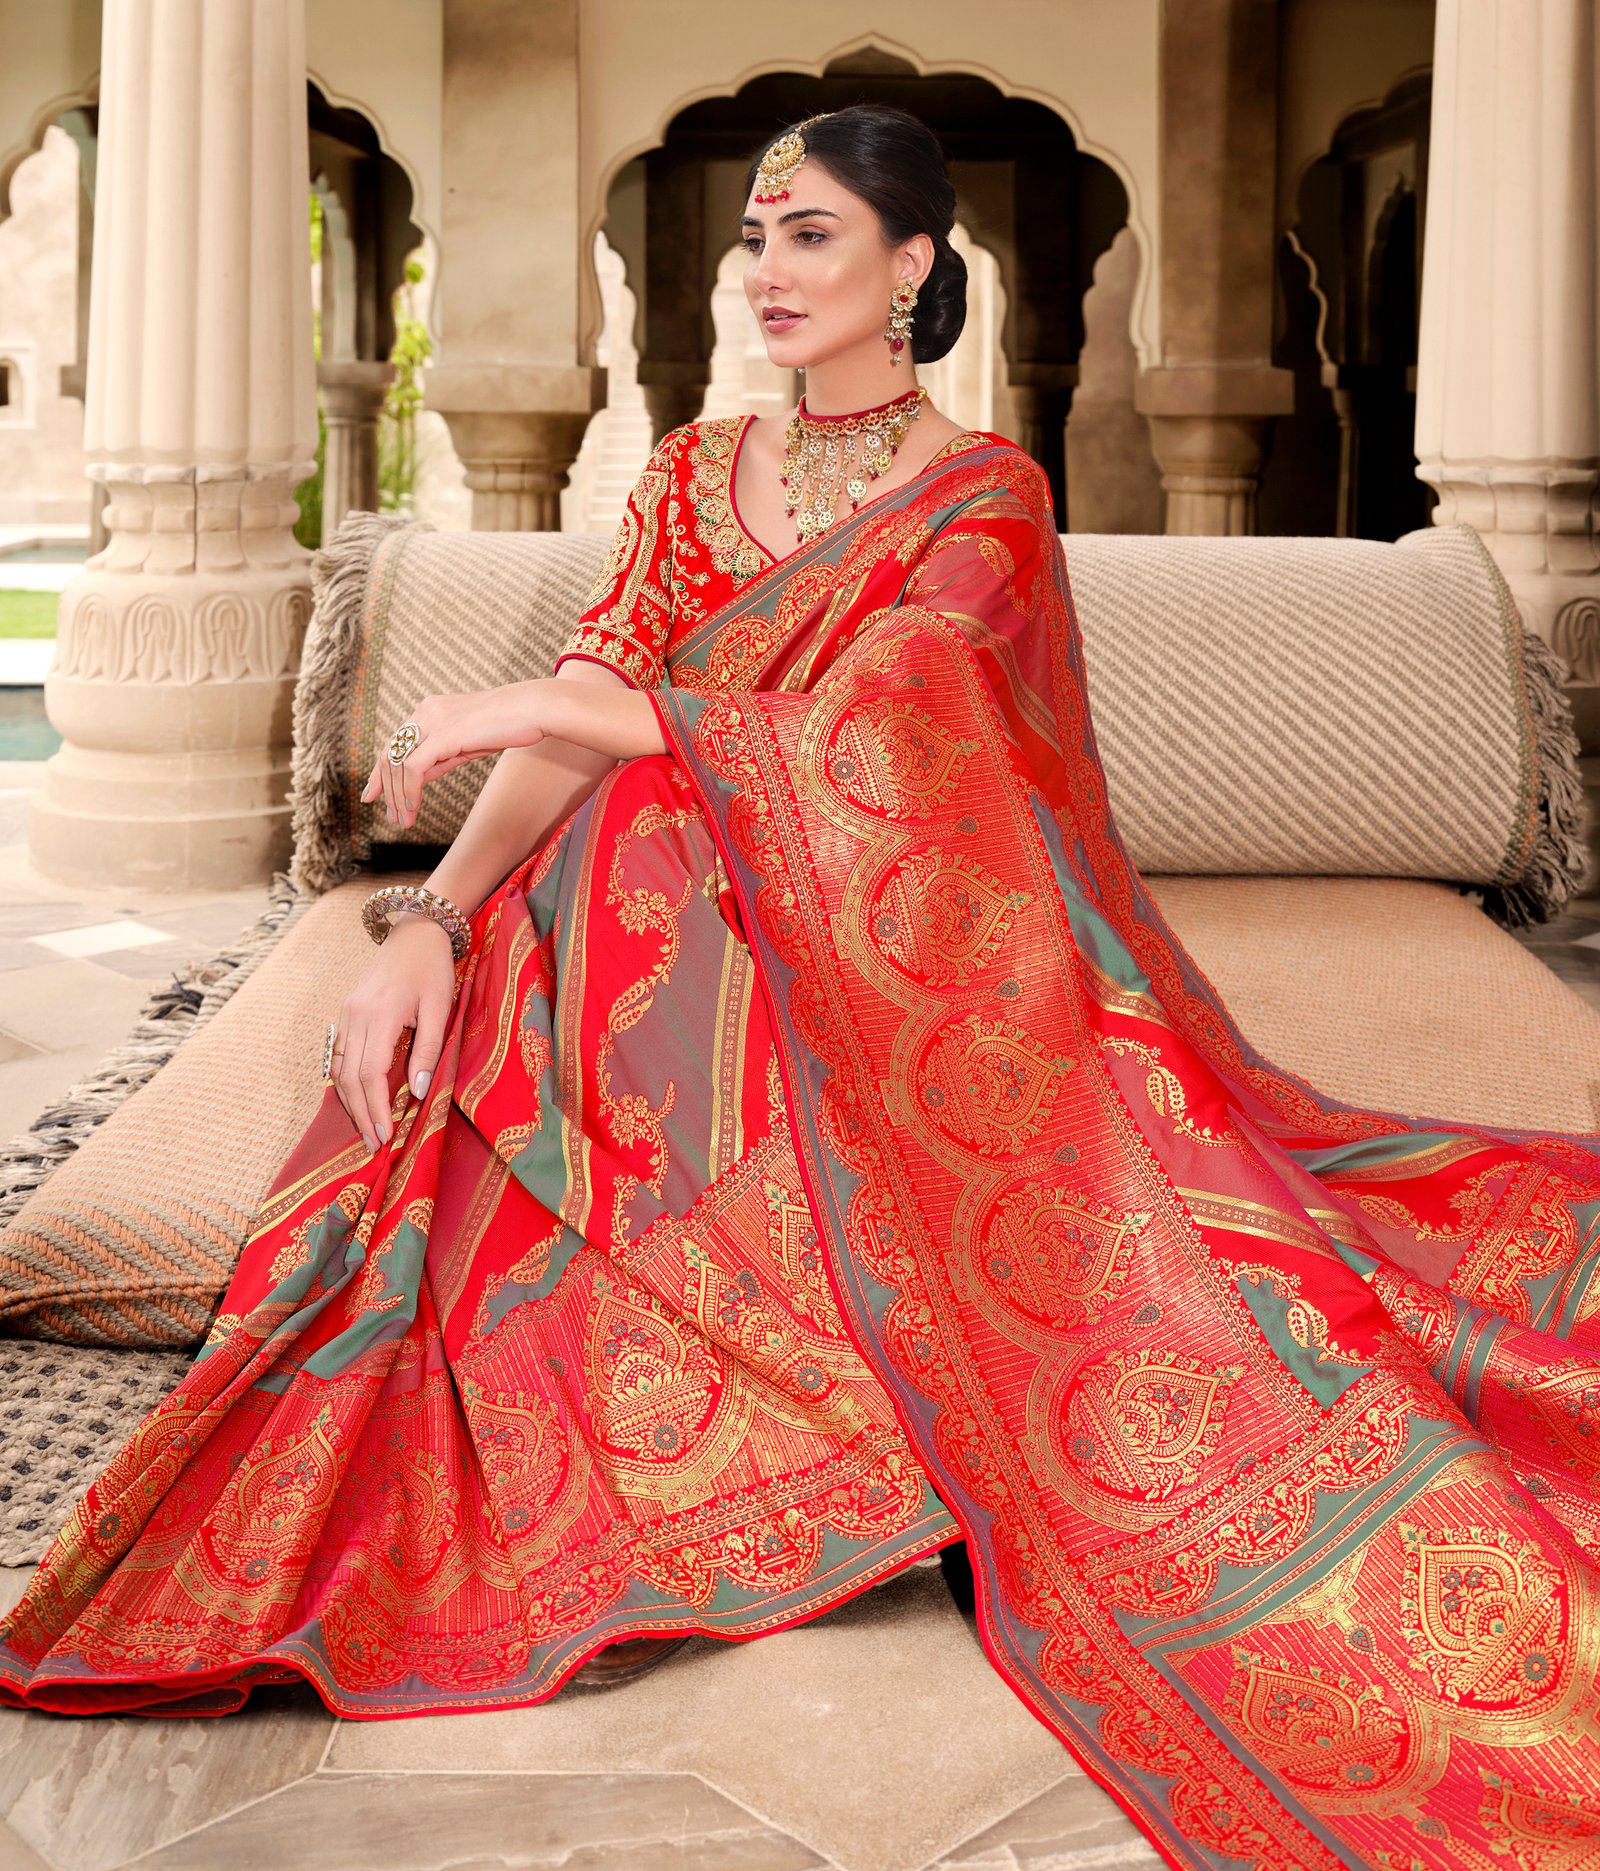 Red color wedding saree design ideas for every bride